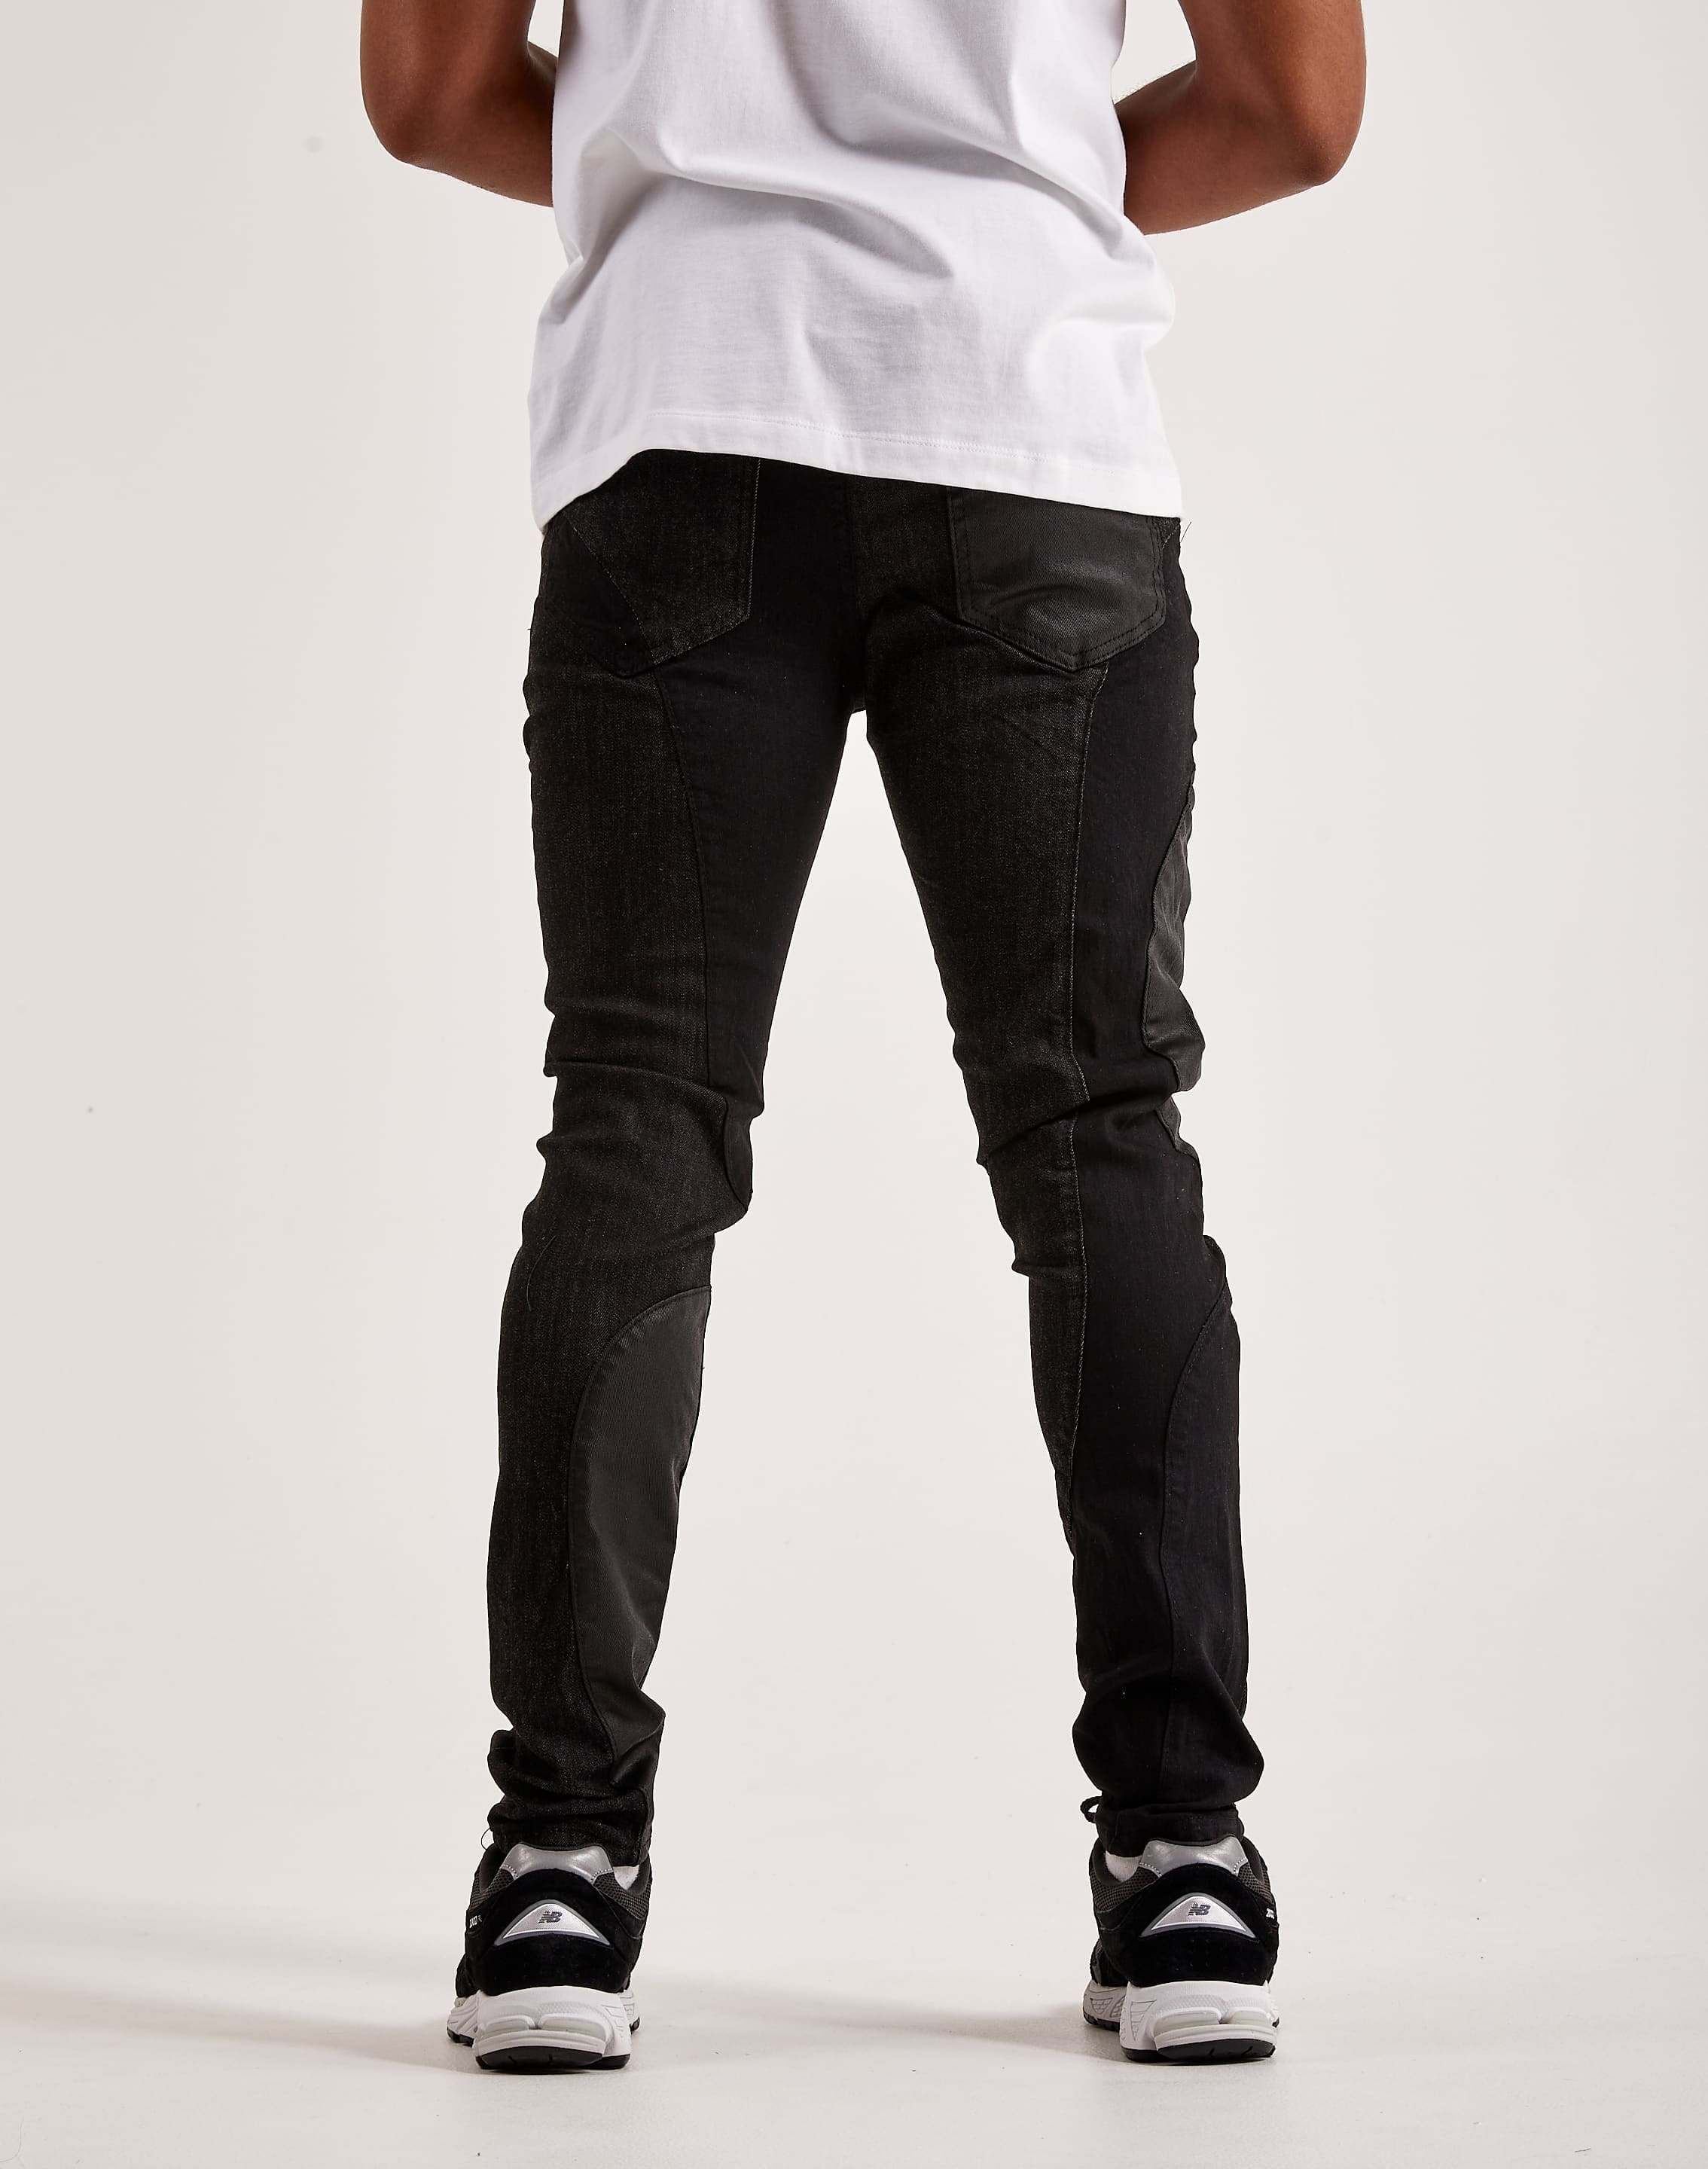 JEN7 Men's Paxtyn Coated Skinny Fit Jeans Black Size 31 - Walmart.com